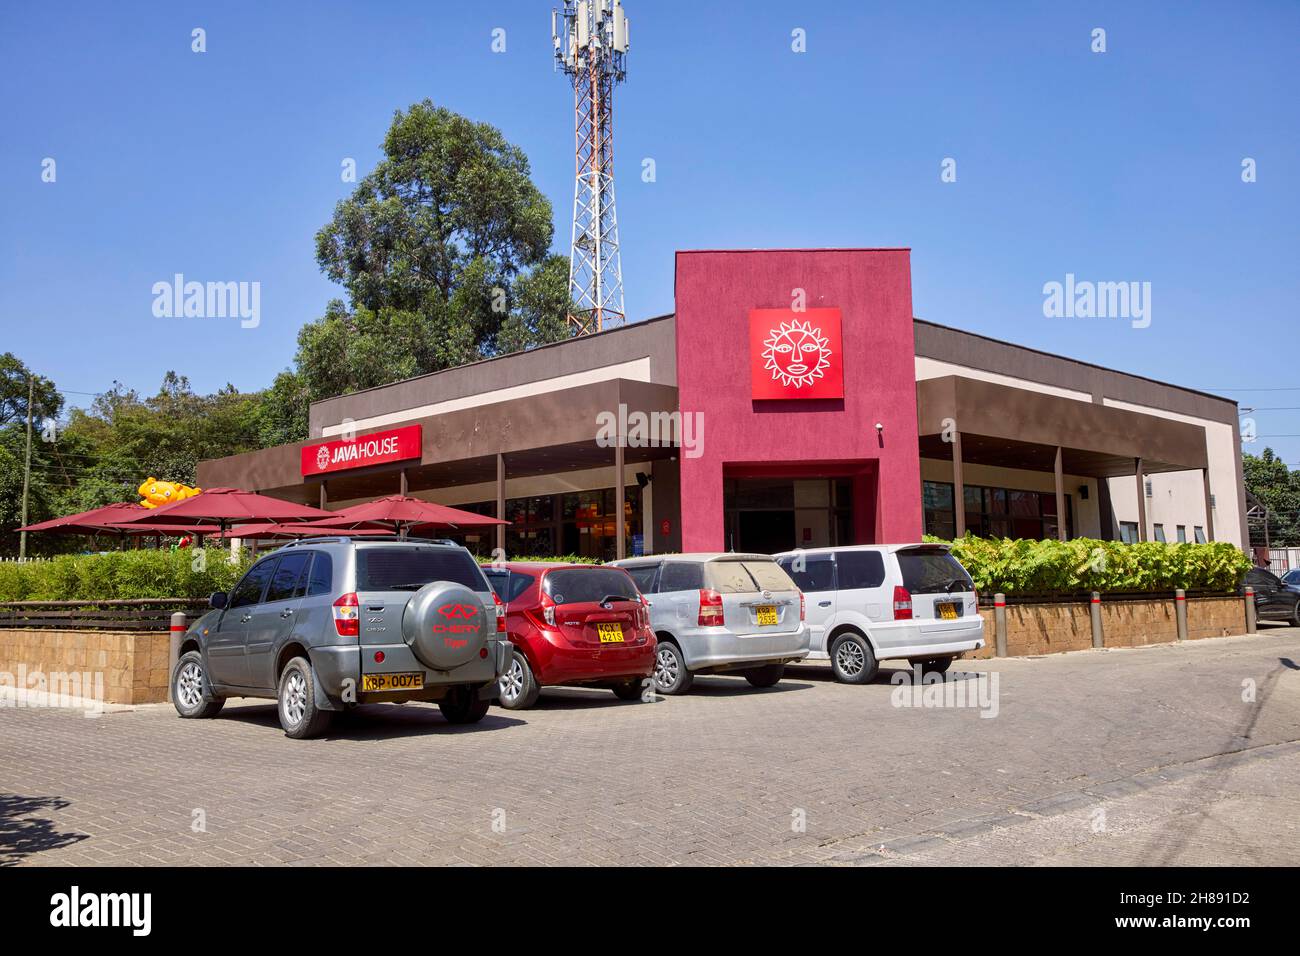 Java House café en Nairobi Kenia África Foto de stock